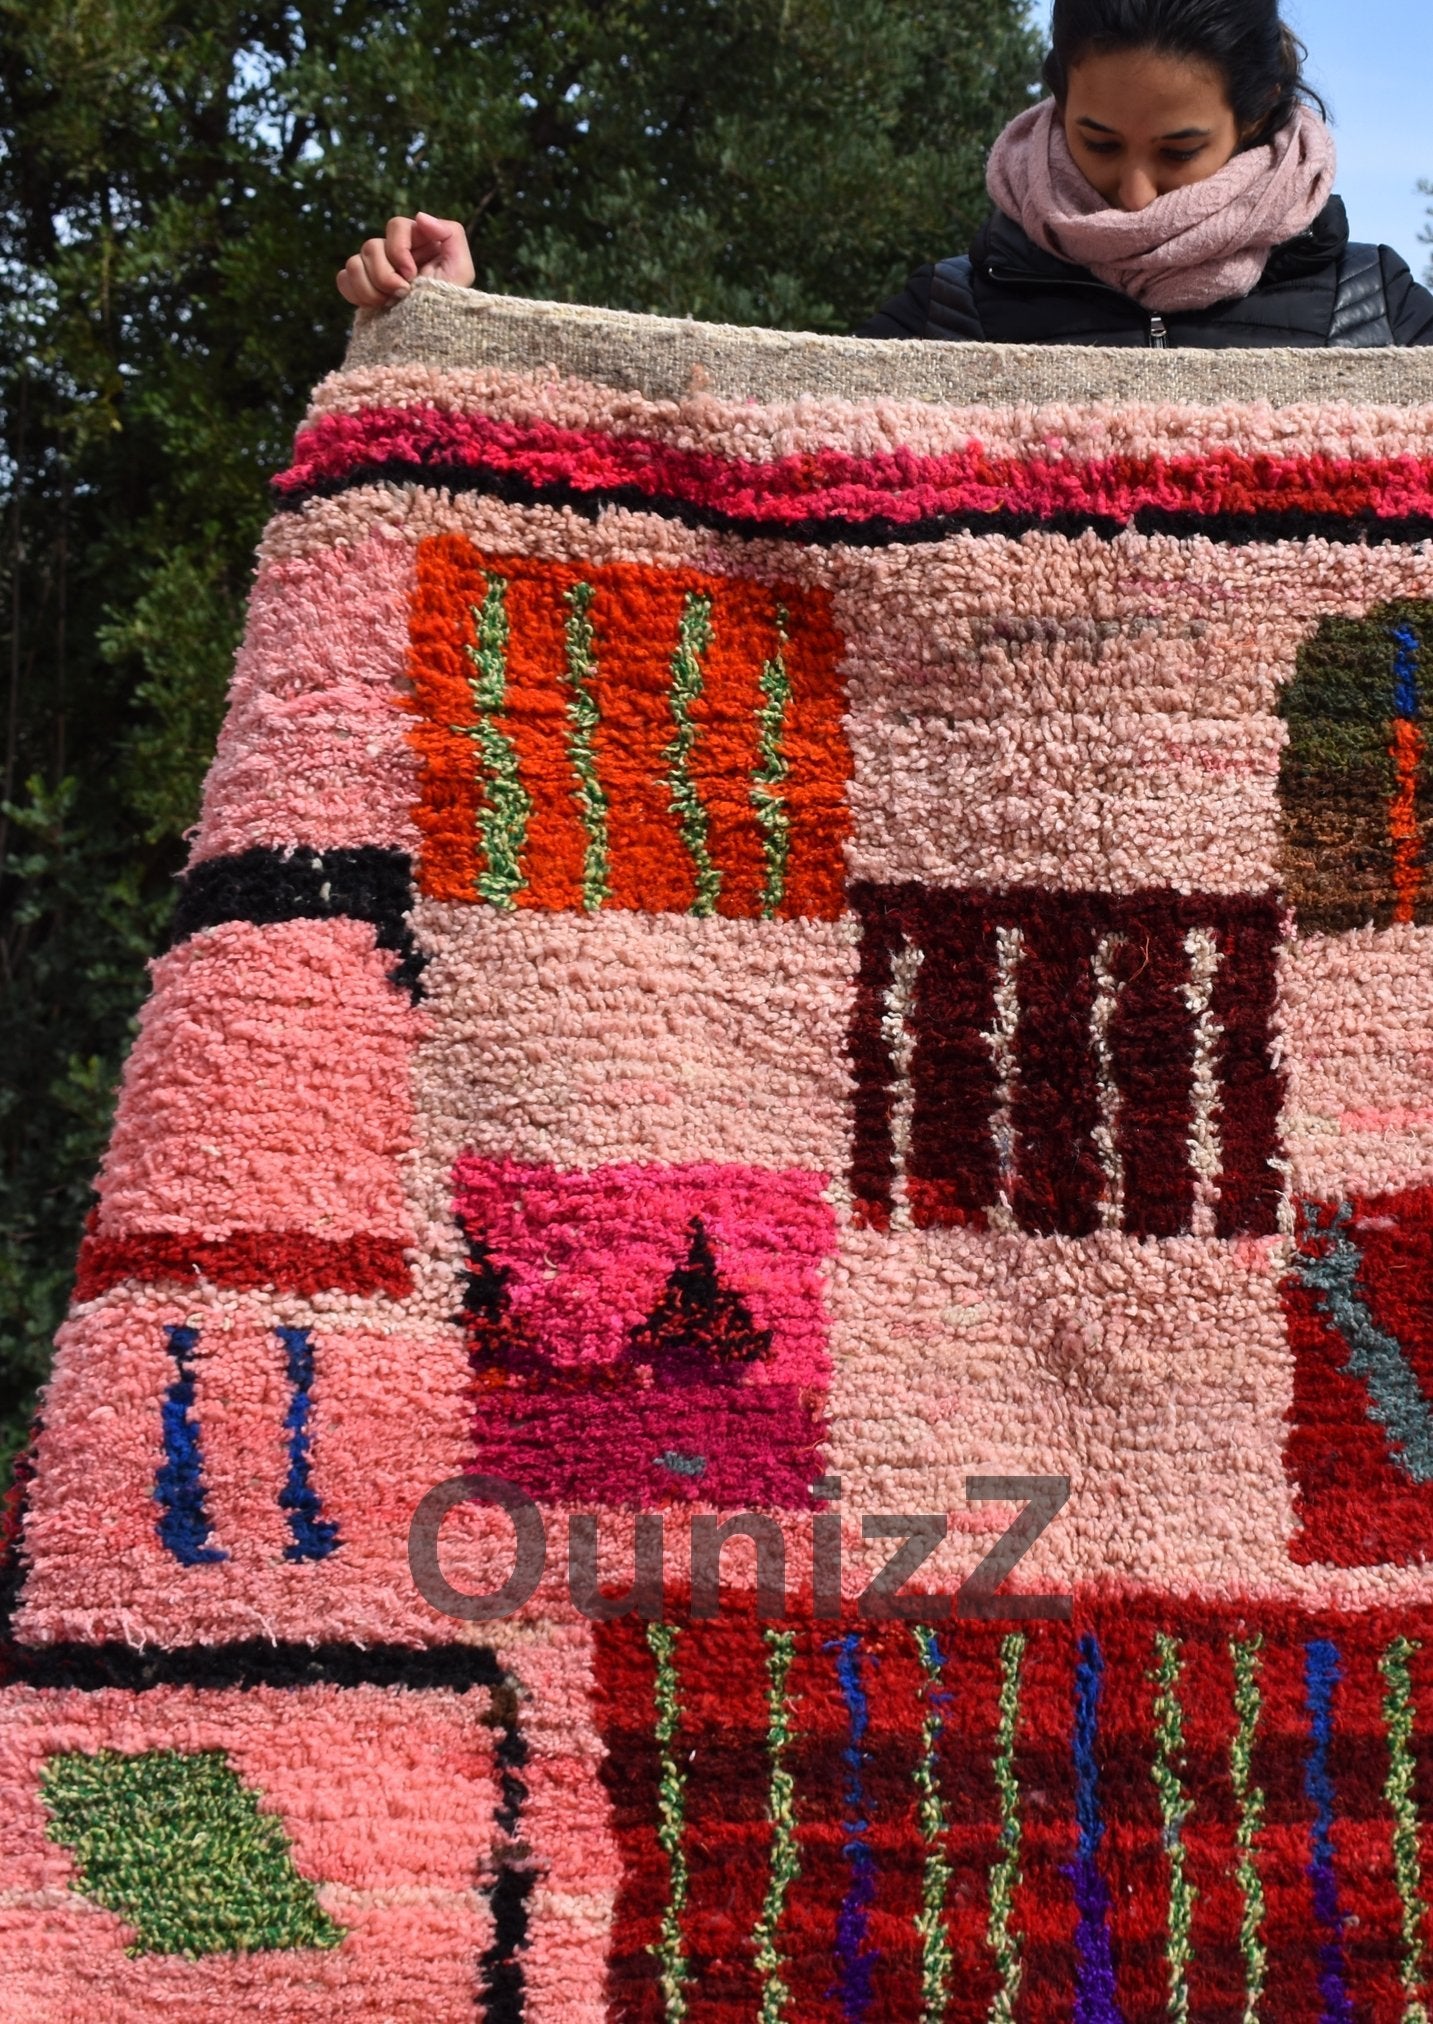 MIRA | 9'12x5'61 Ft | 278x171 cm | Moroccan Pink Rug | 100% wool handmade - OunizZ